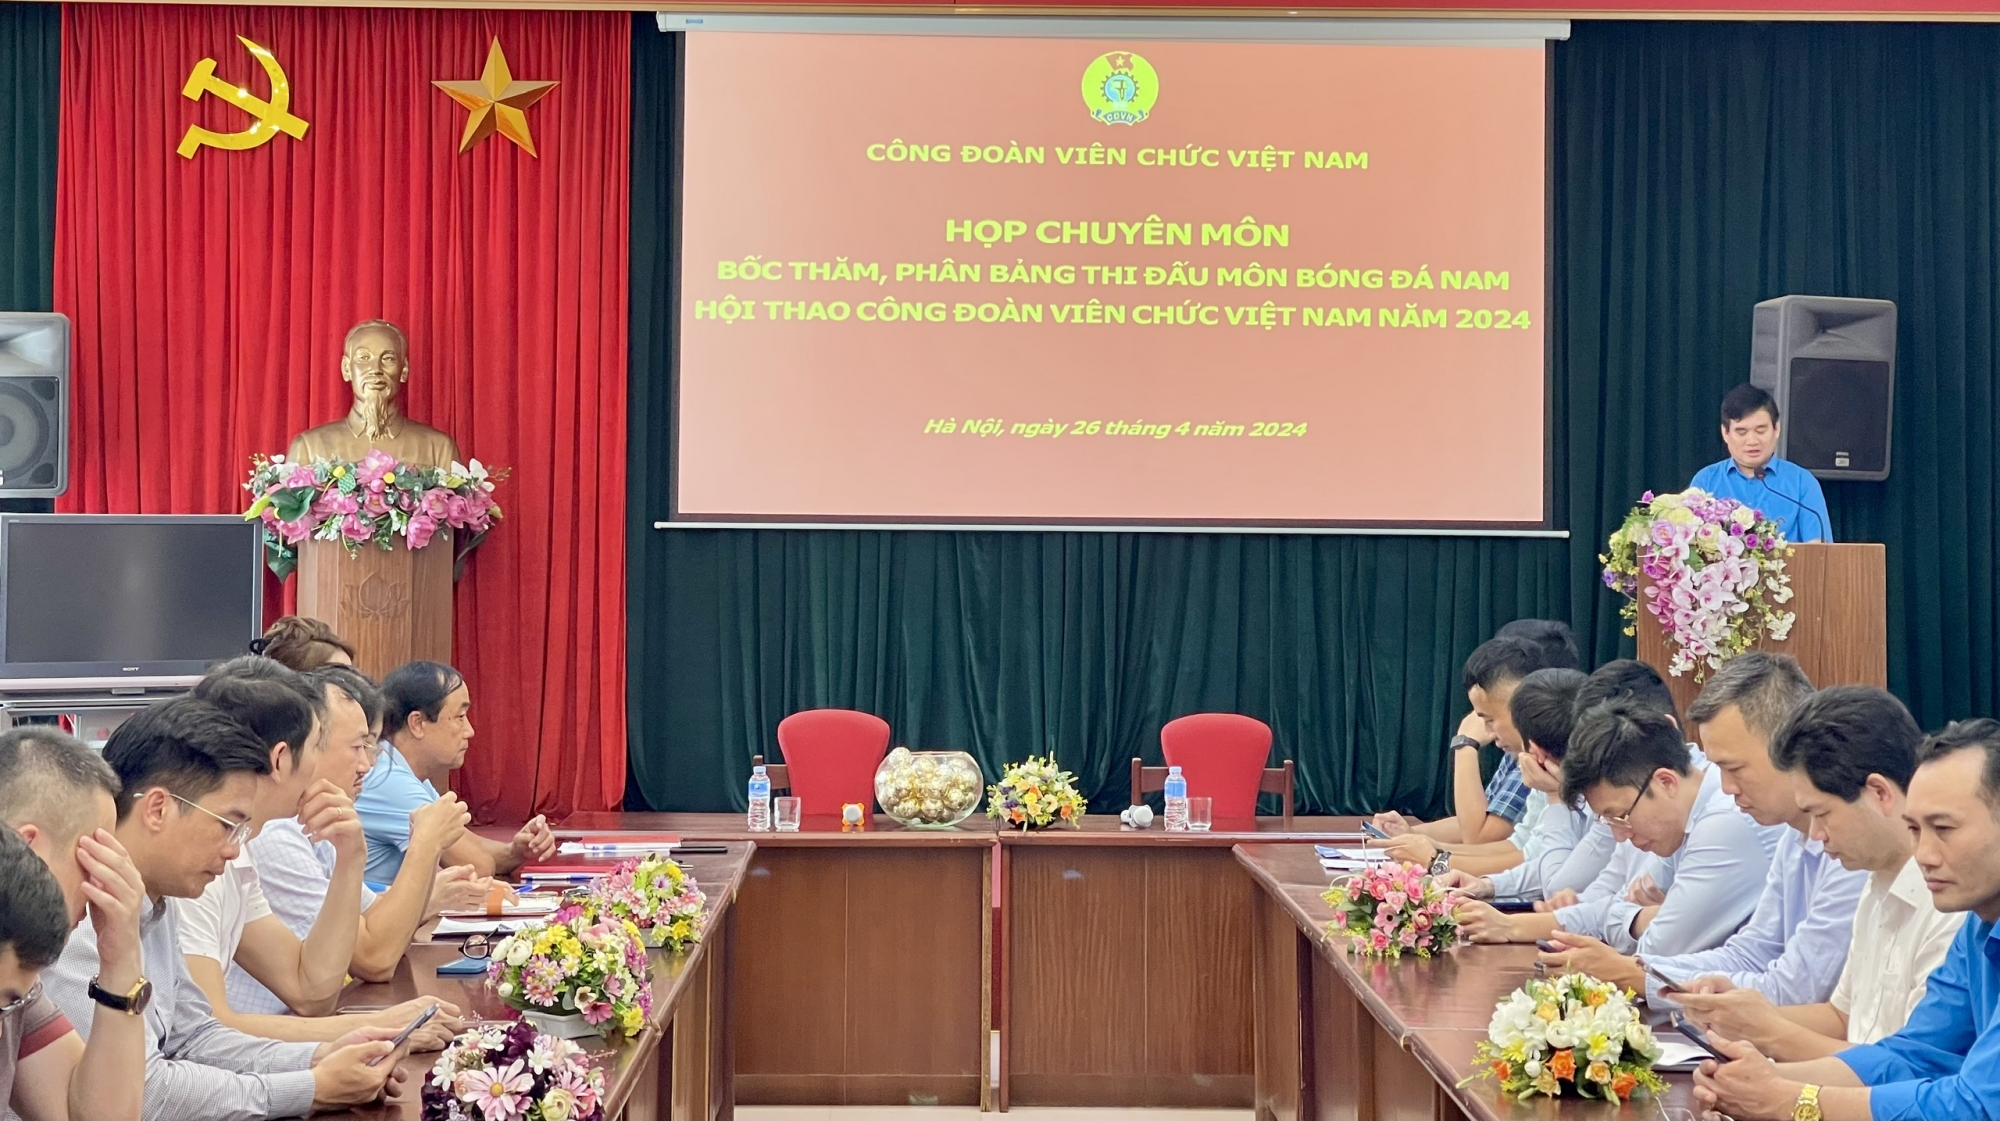 Bốc thăm, phân bảng môn Bóng đá Hội thao Công đoàn Viên chức Việt Nam năm 2024